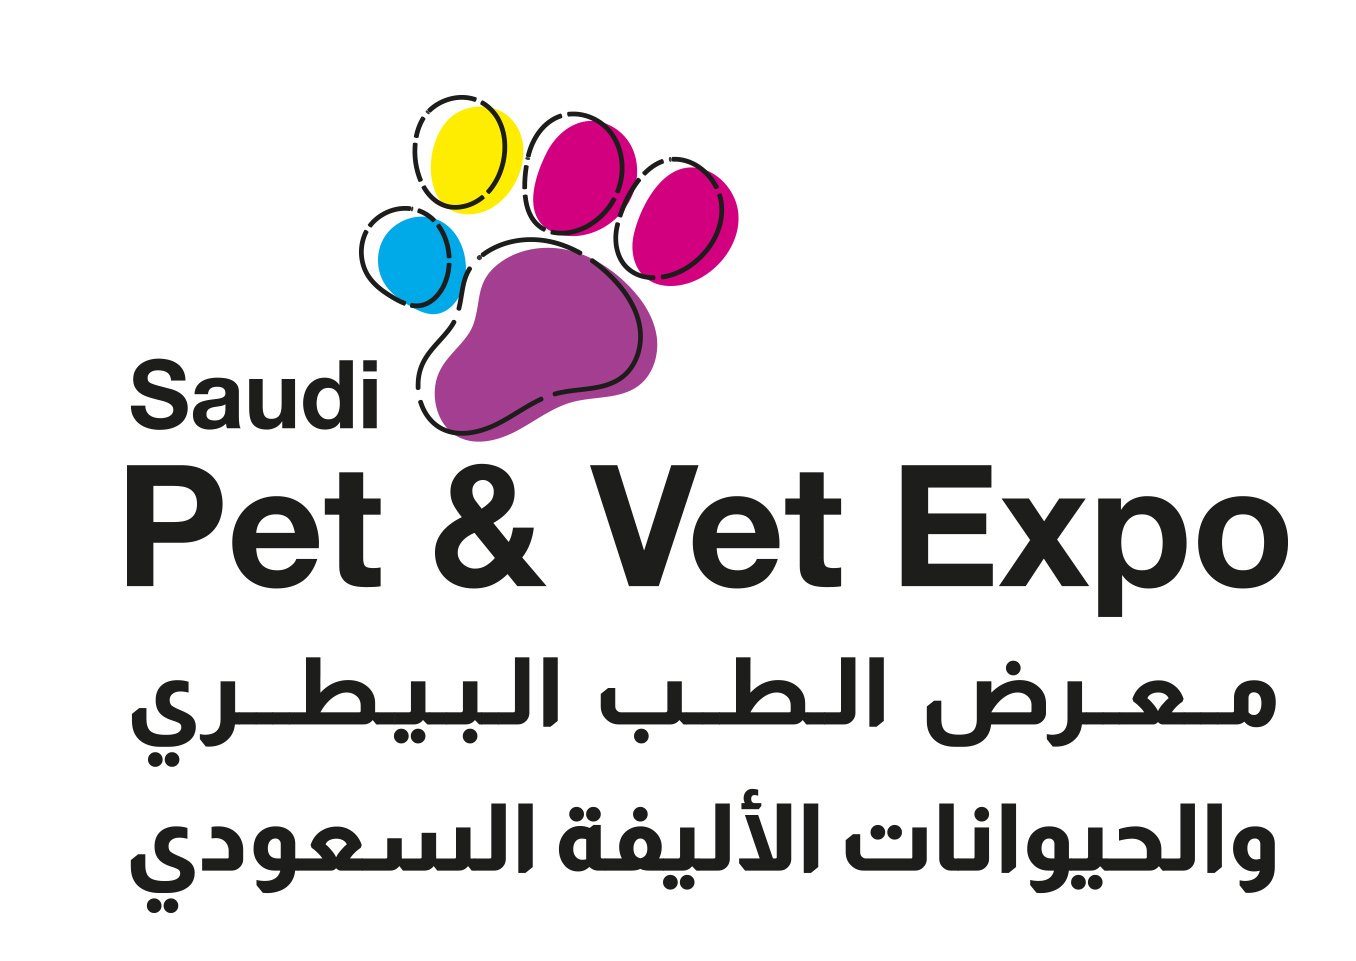 Pet &Vet Expo